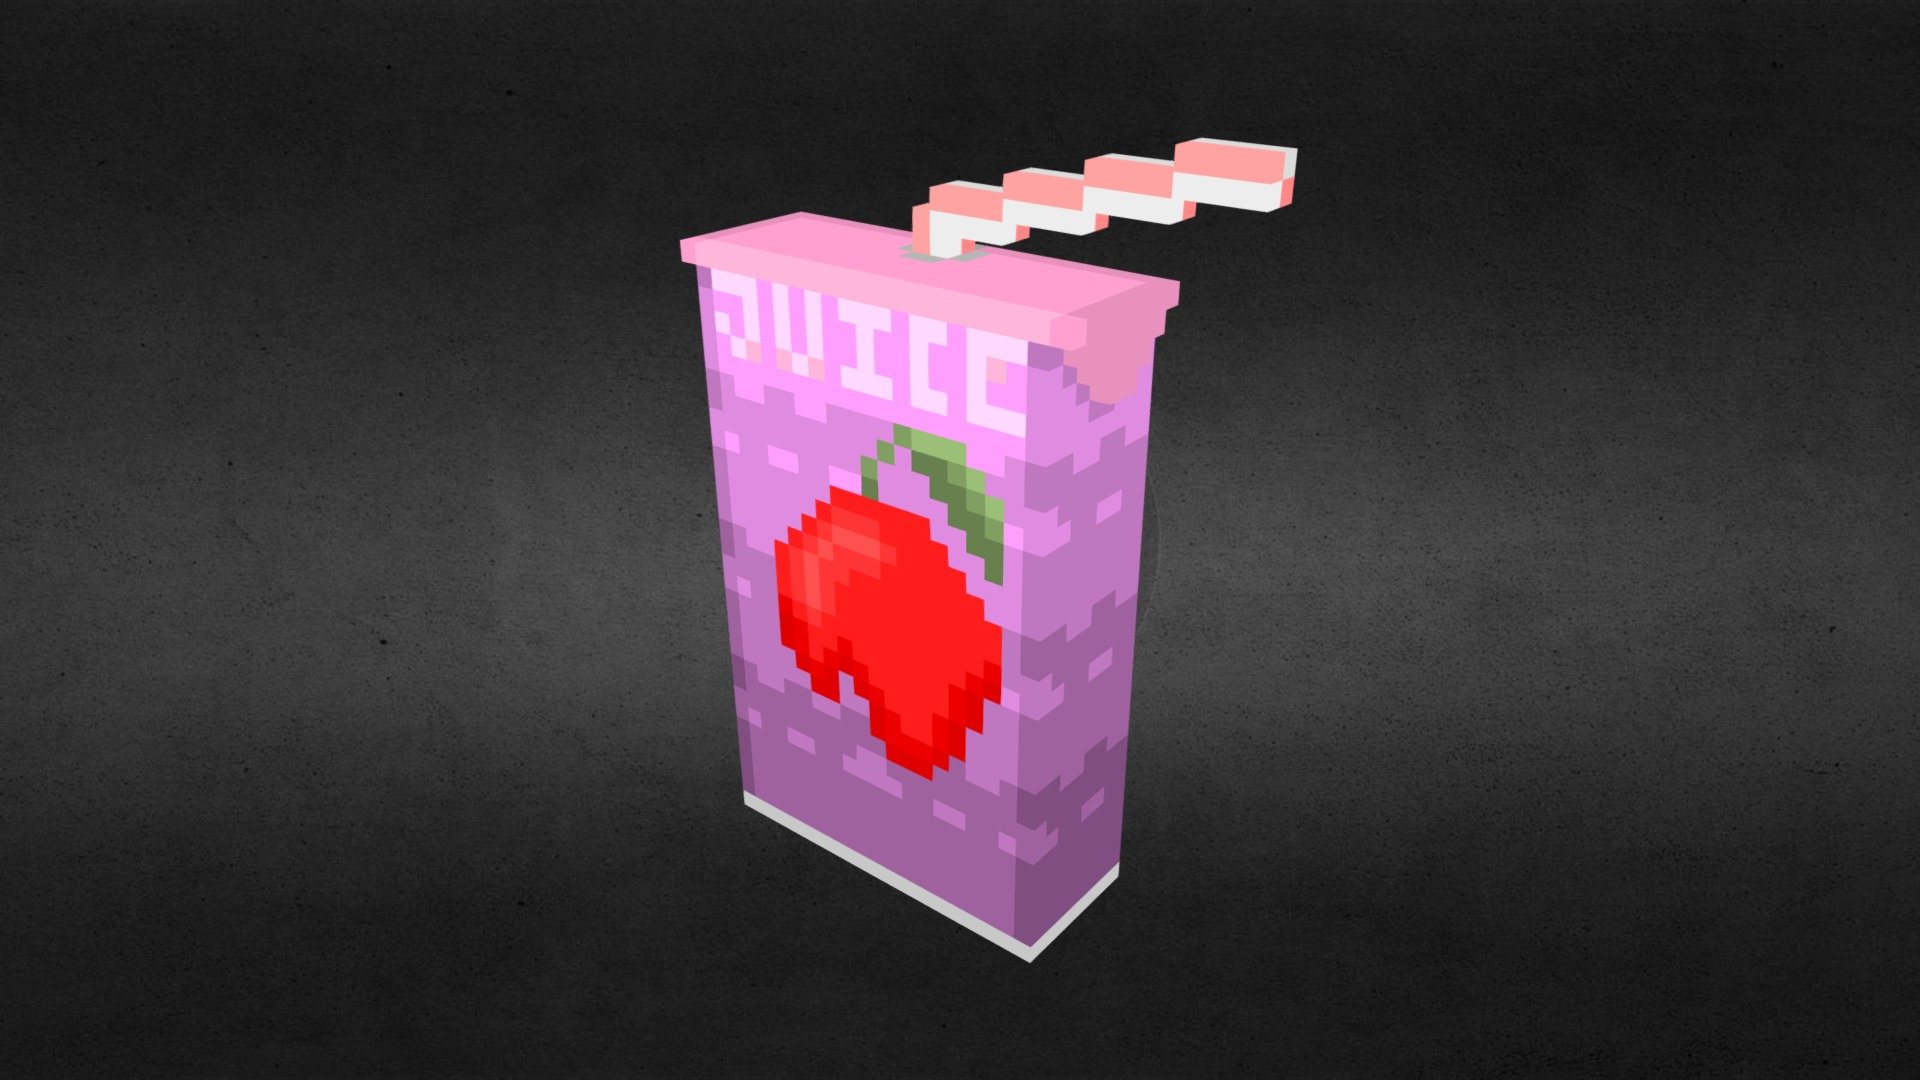 juicebox drink